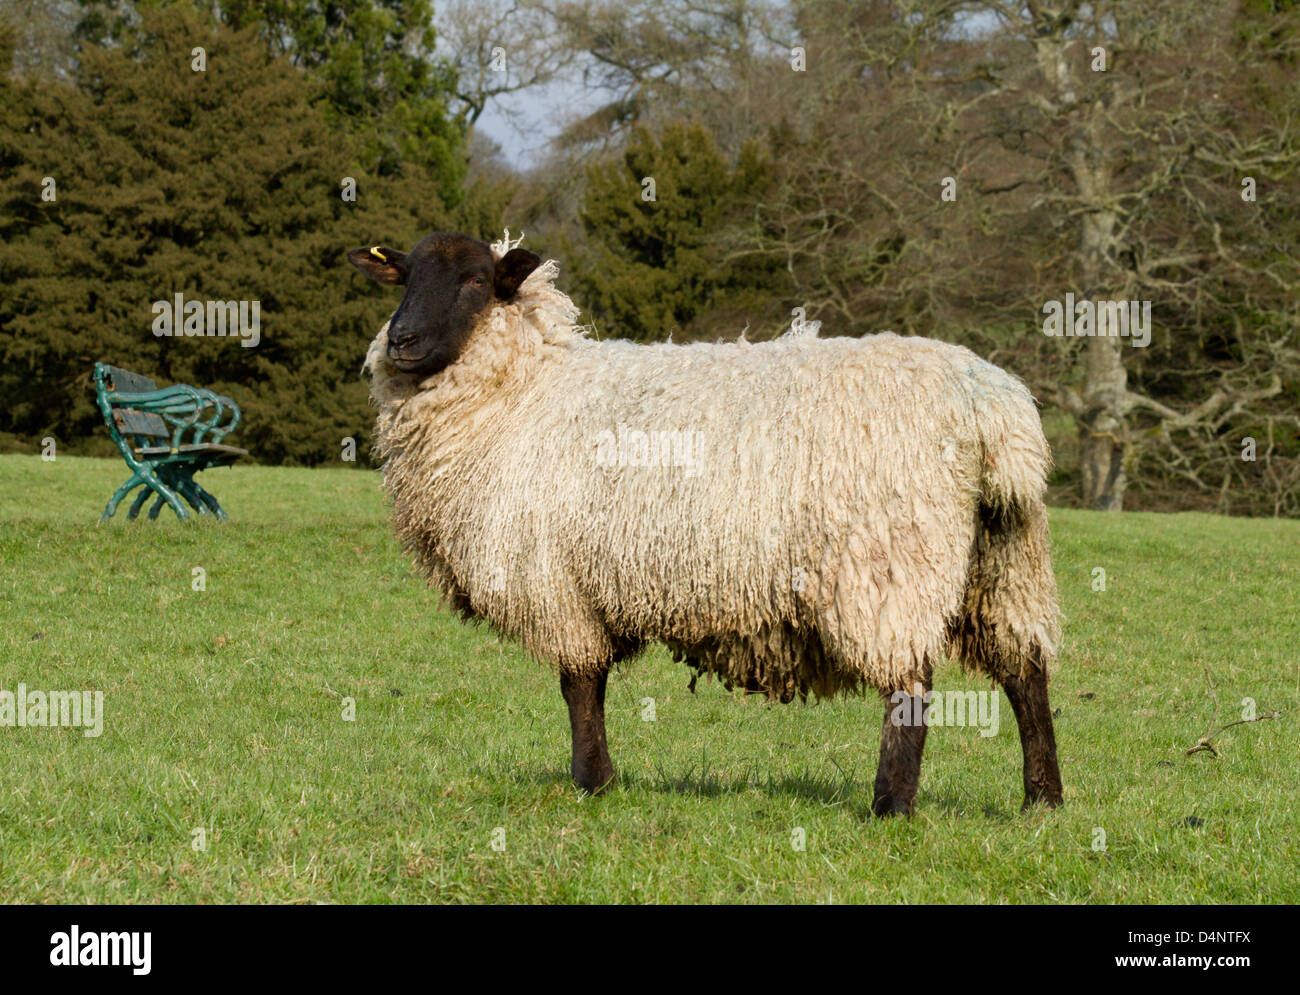 Schwanger Ewe in einem Feld Stockfoto